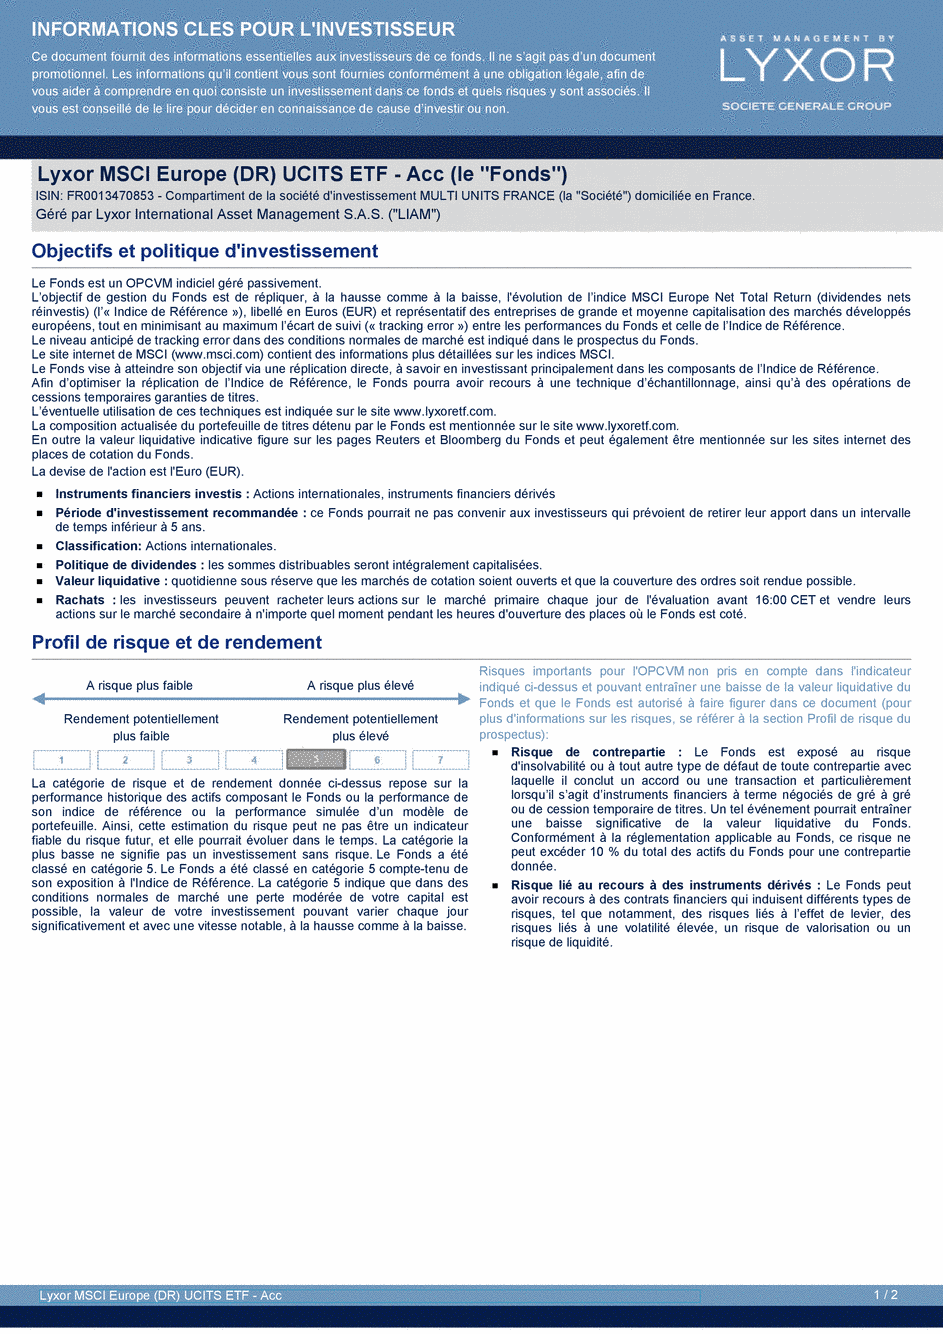 DICI LYXOR MSCI EUROPE (DR) UCITS ETF Acc - 30/12/2019 - Français